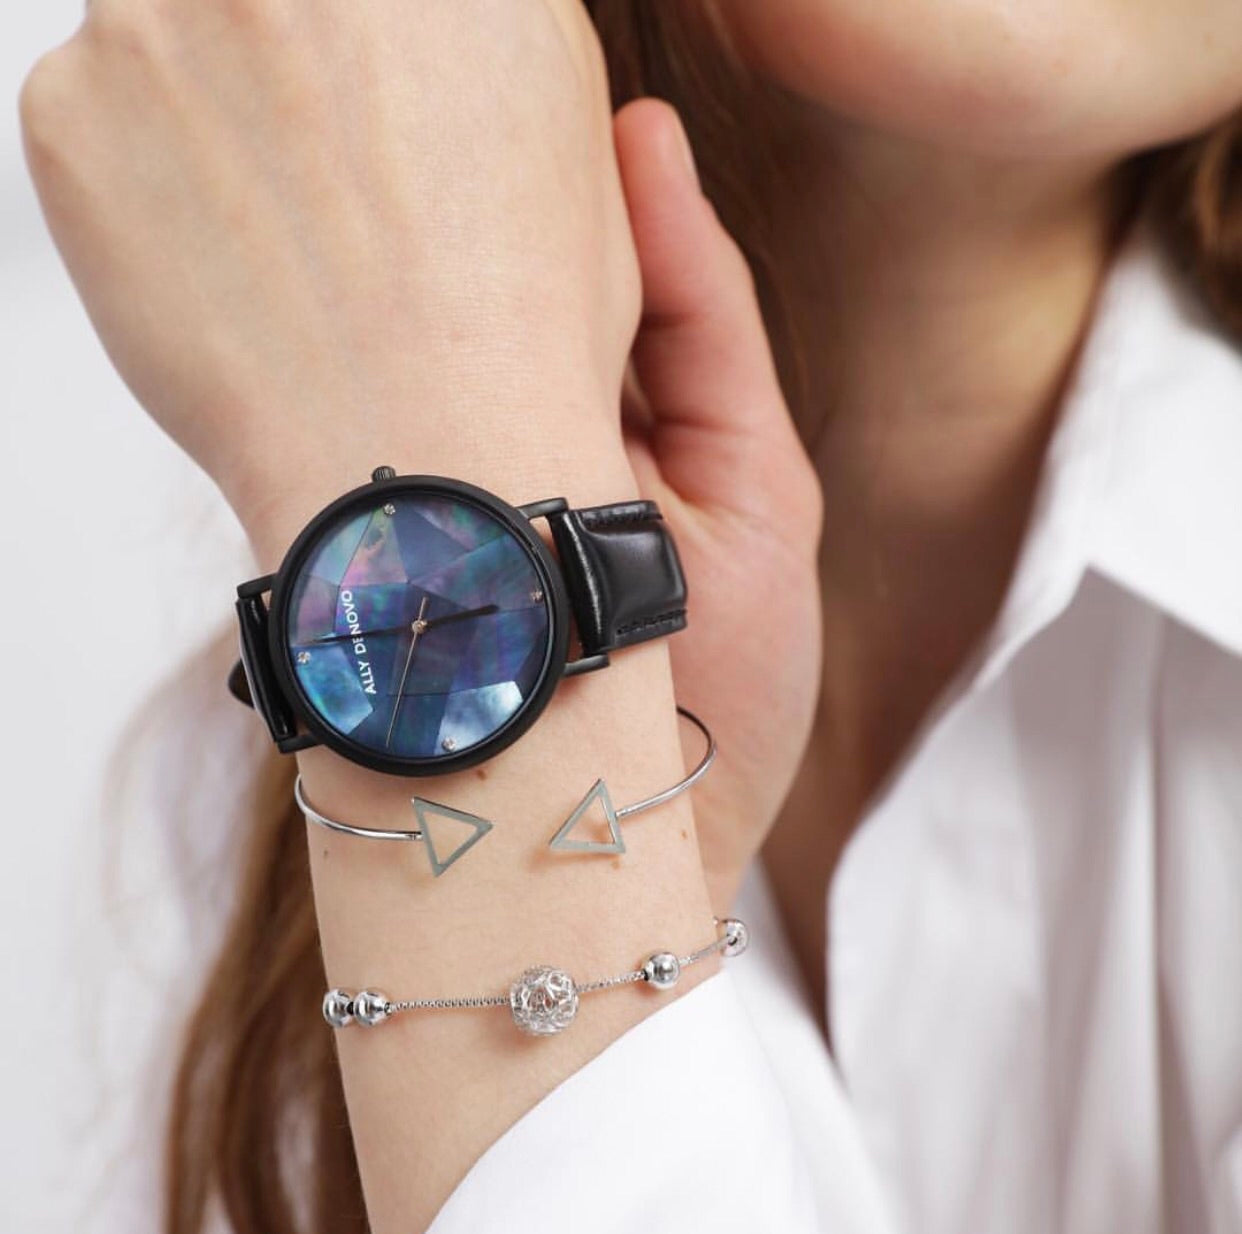 Gaia pearl皮革腕錶-藍色菱形琉璃黑框黑色真皮錶帶 AF5003.5